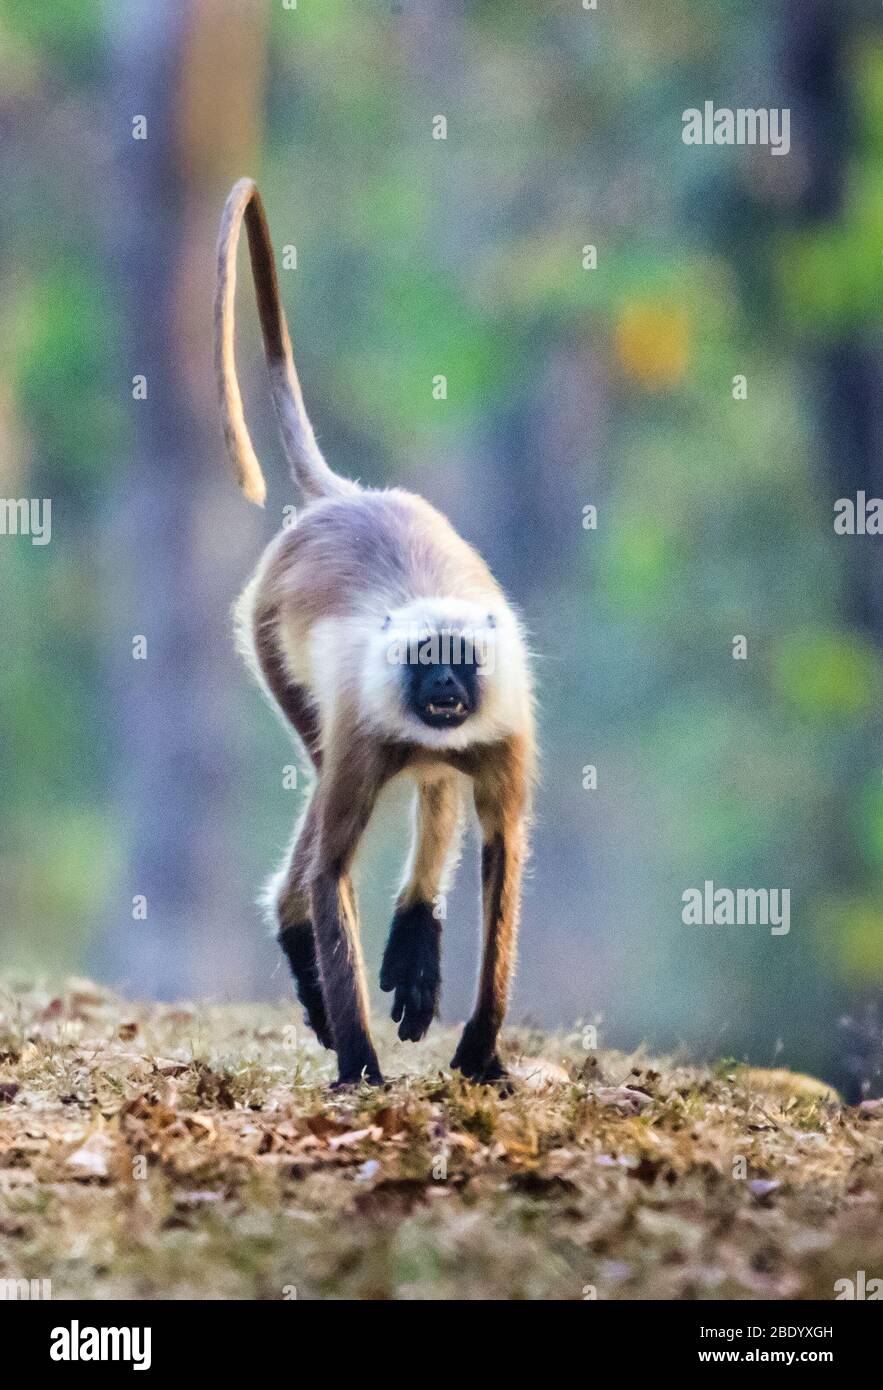 Portrait of langur monkey walking, India Stock Photo